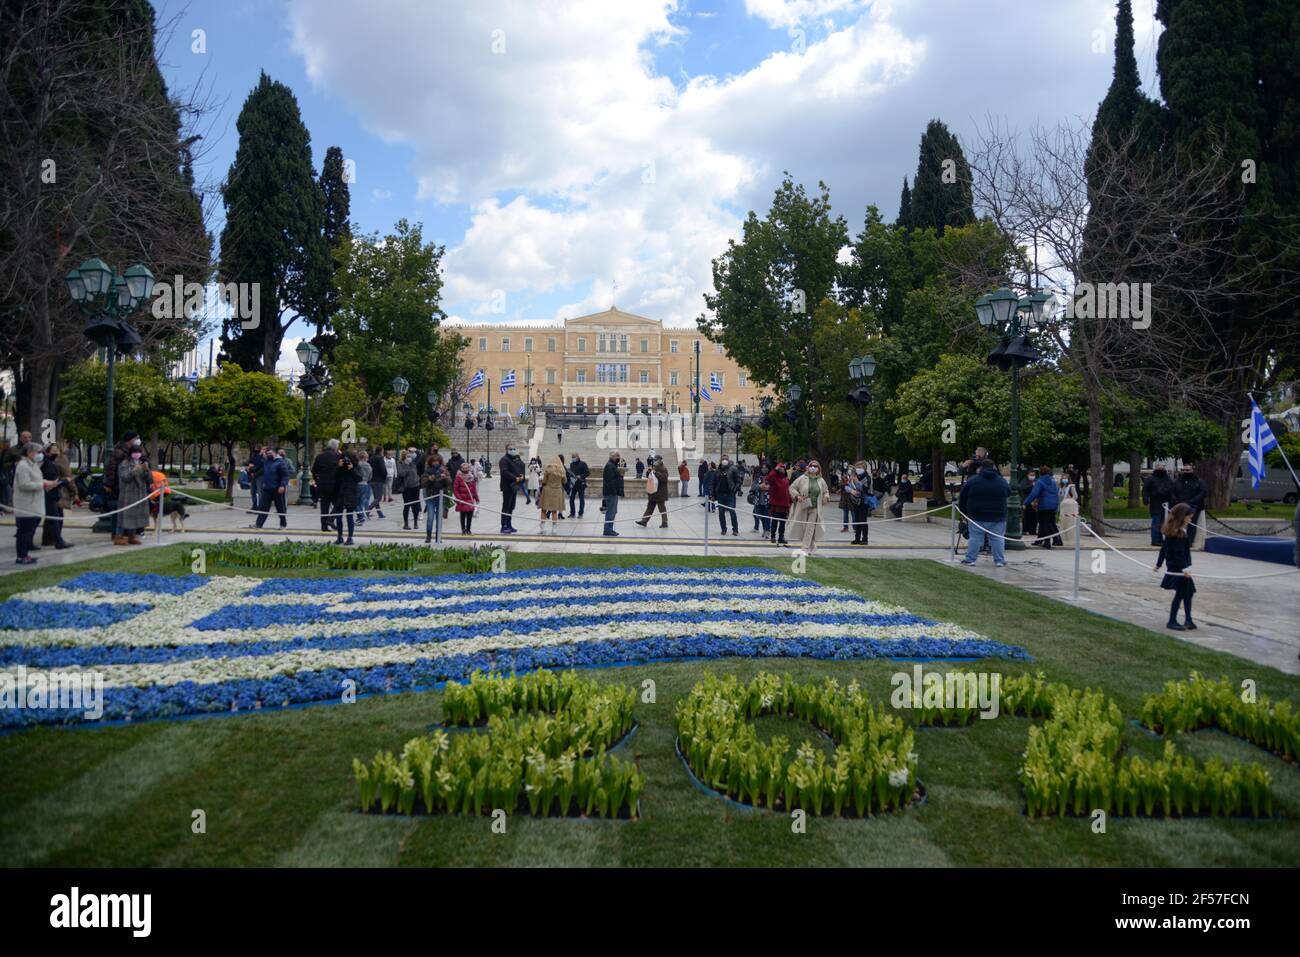 Griechische Flaggen auf dem Syntagma-Platz vor den Feierlichkeiten zum zweihundertjährigen Unabhängigkeitstag. Athen, Griechenland, 24. März 2021. Quelle: Dimitris Aspiotis Stockfoto